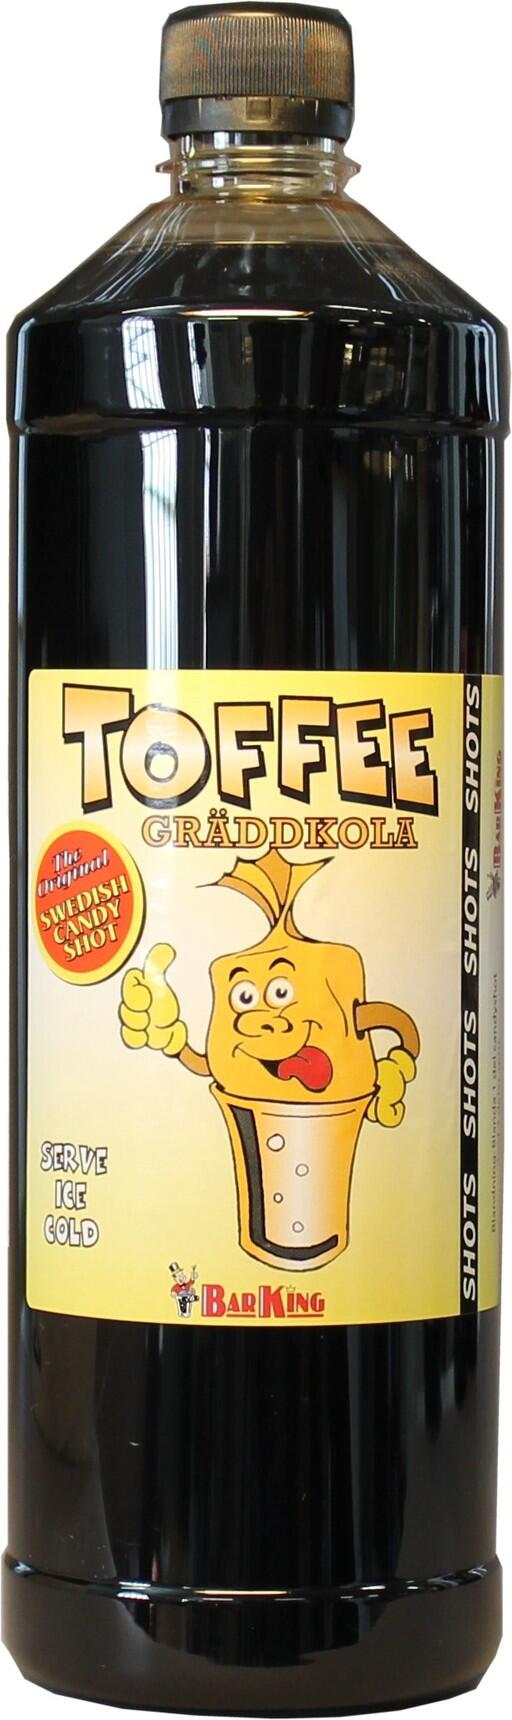 Toffee gräddkolashots blandas till goda shotsdrinkar med smak av gräddkola.